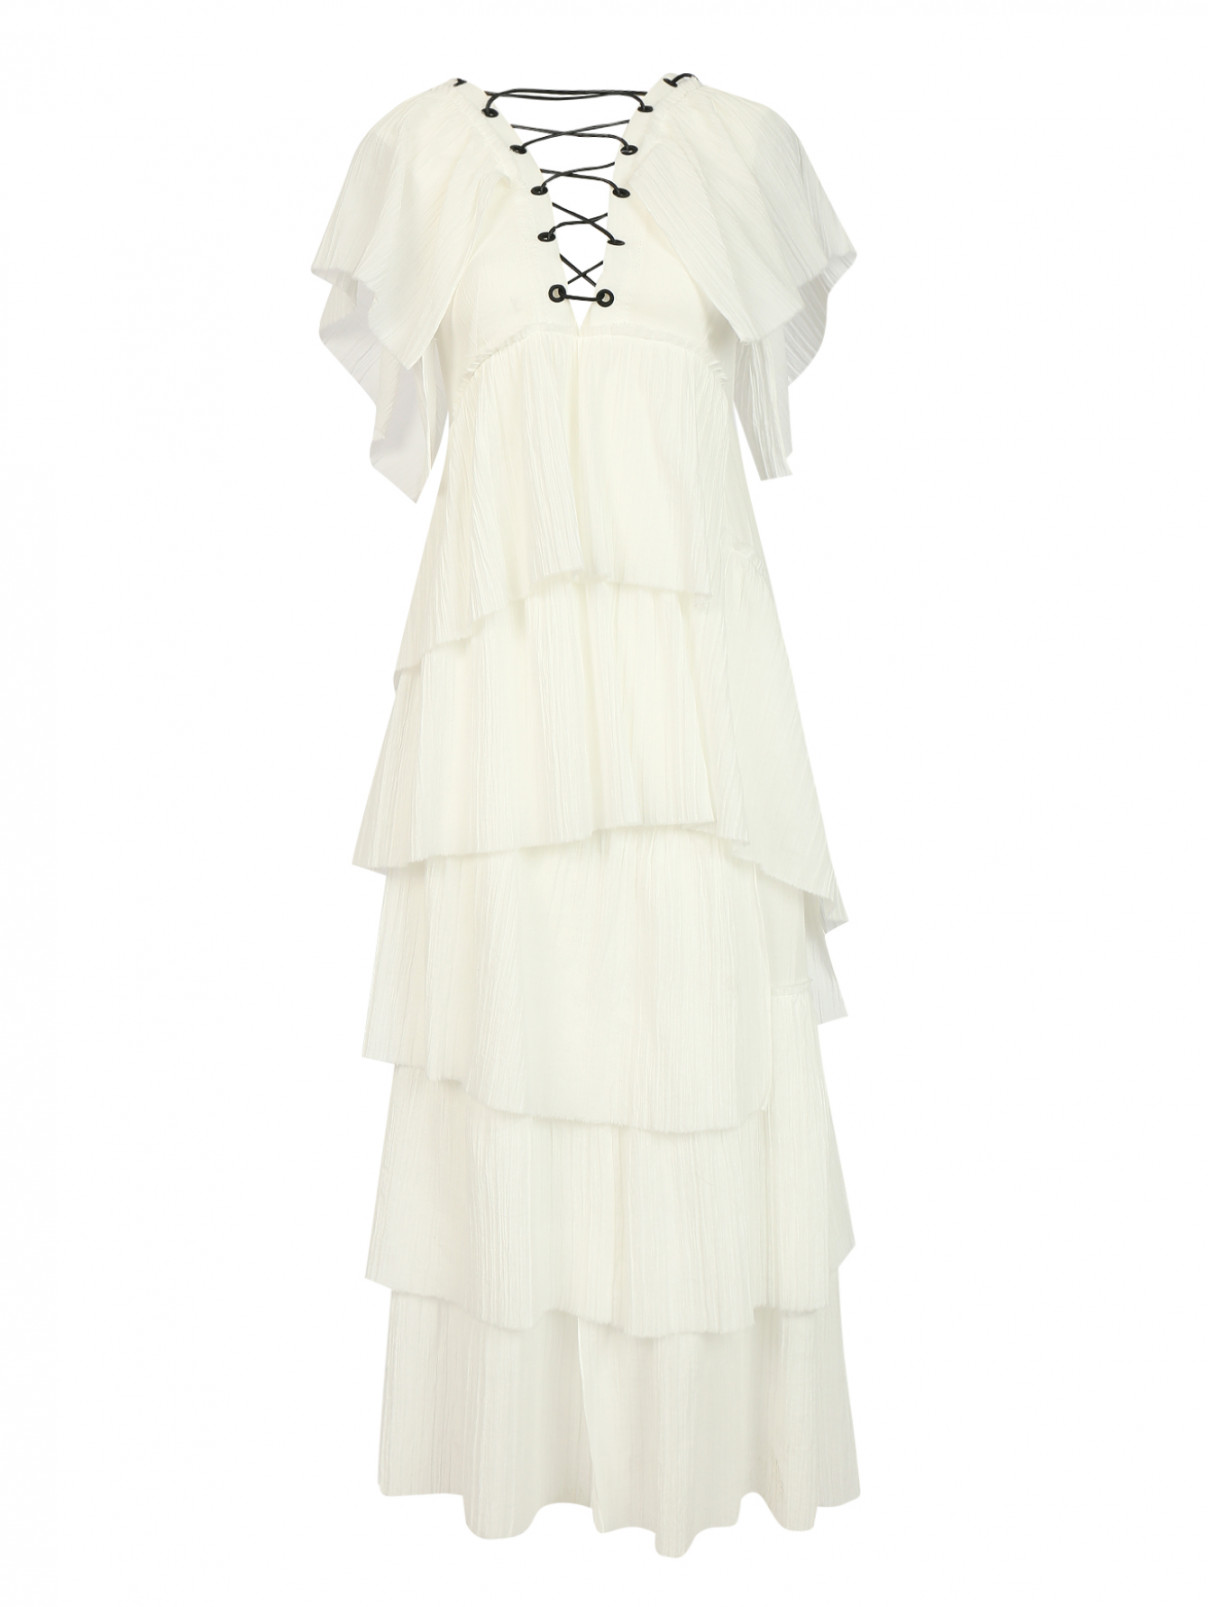 Платье из хлопка с декором Sonia Rykiel  –  Общий вид  – Цвет:  Белый